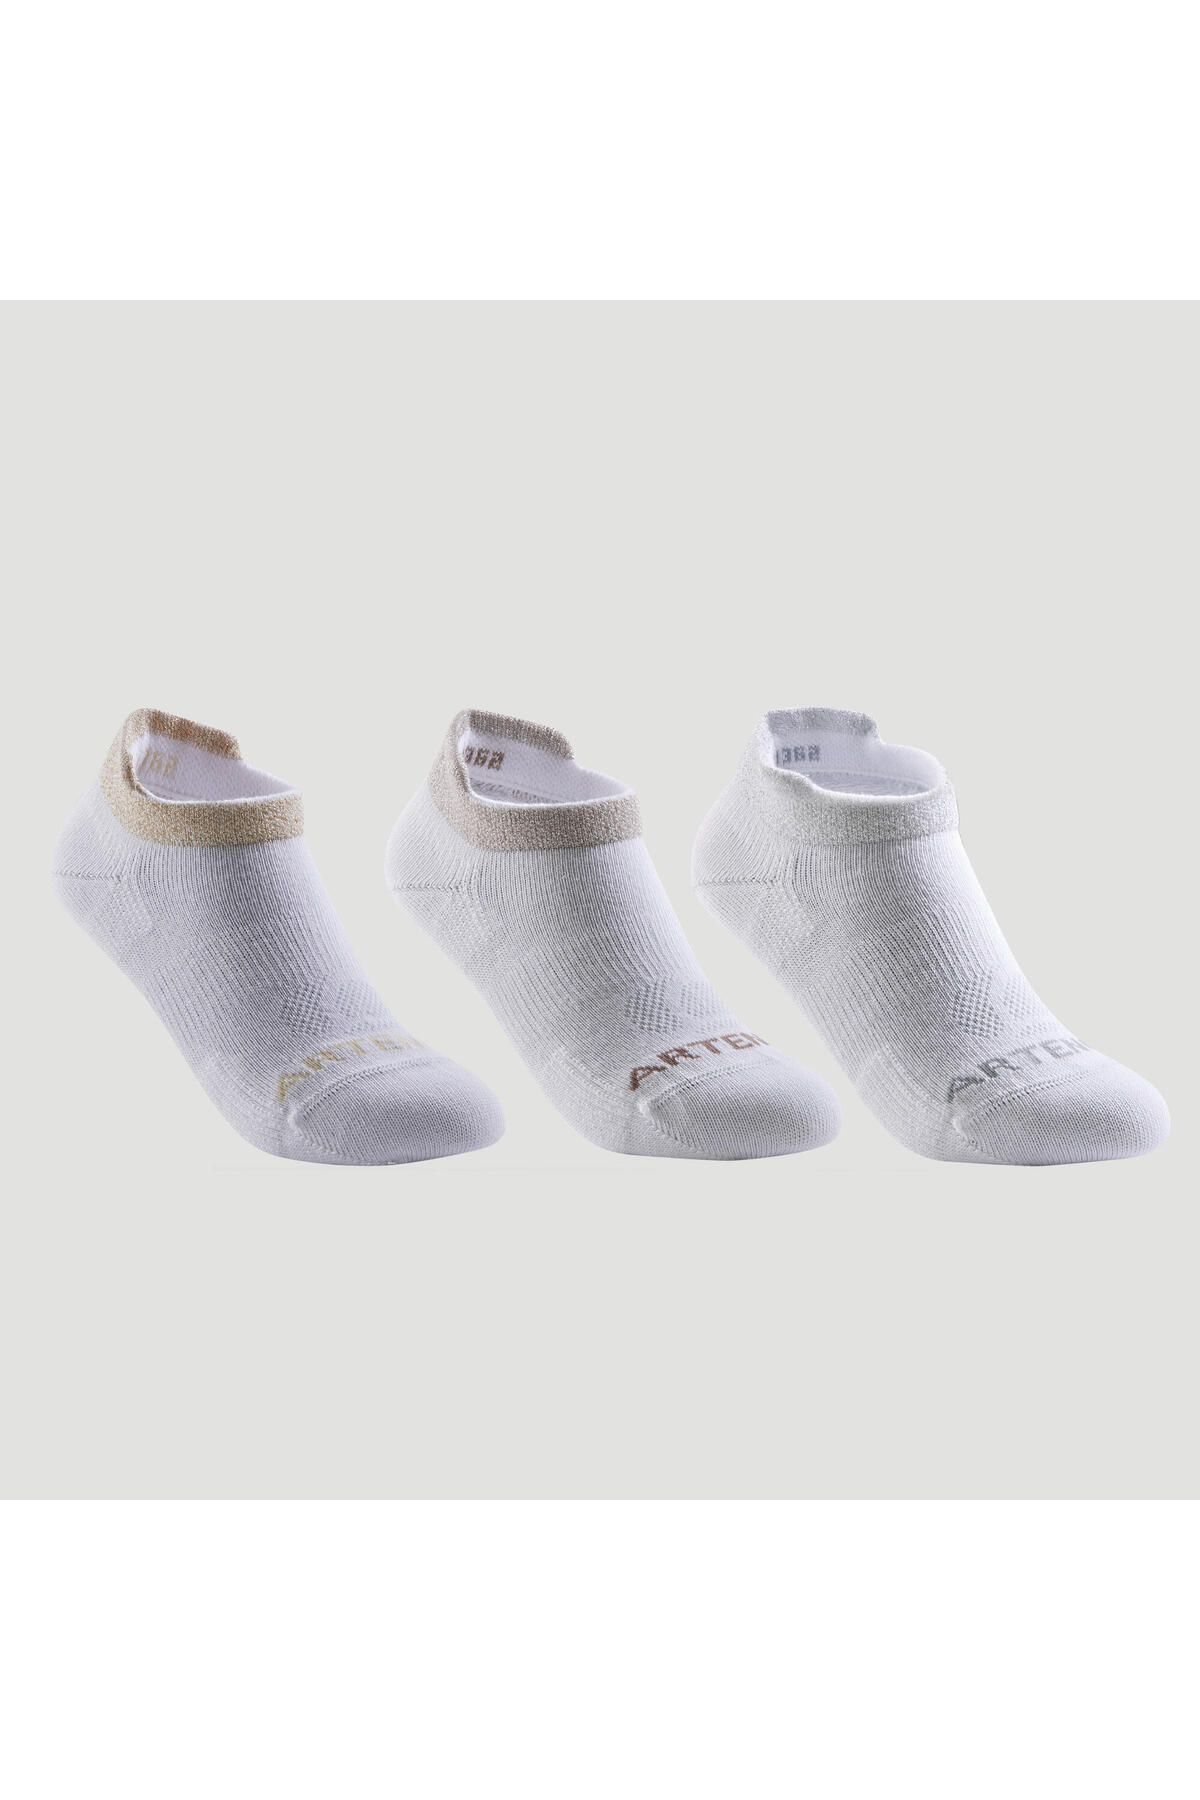 Decathlon Artengo Çocuk Tenis Çorabı - Kısa Konç - 3 Çift - Beyaz - Rs 160 304966